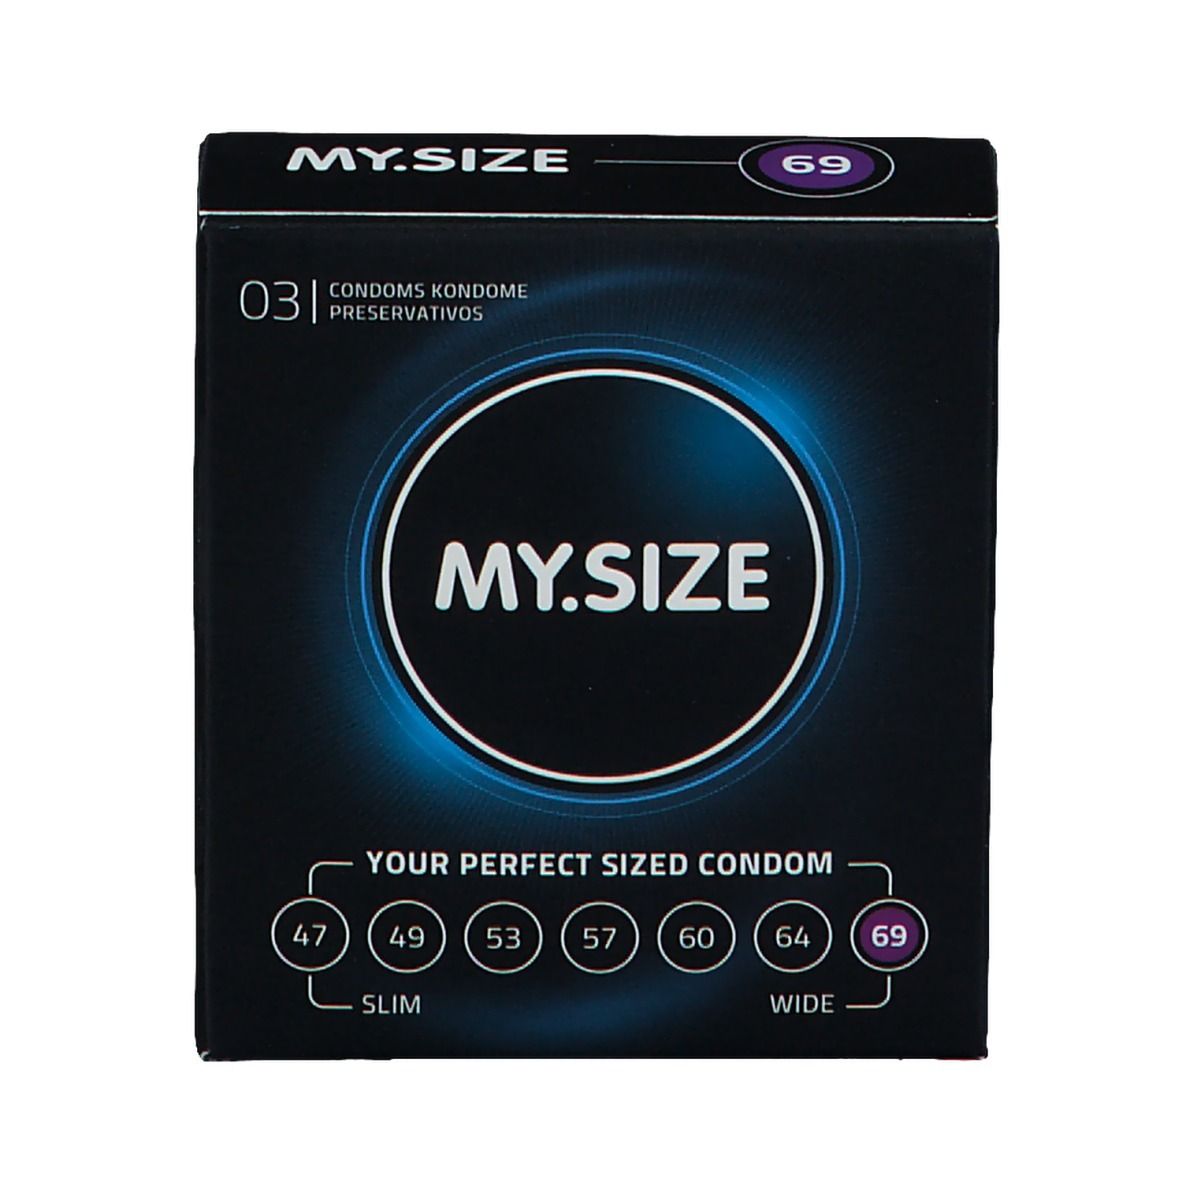 MY.SIZE 69 Kondome